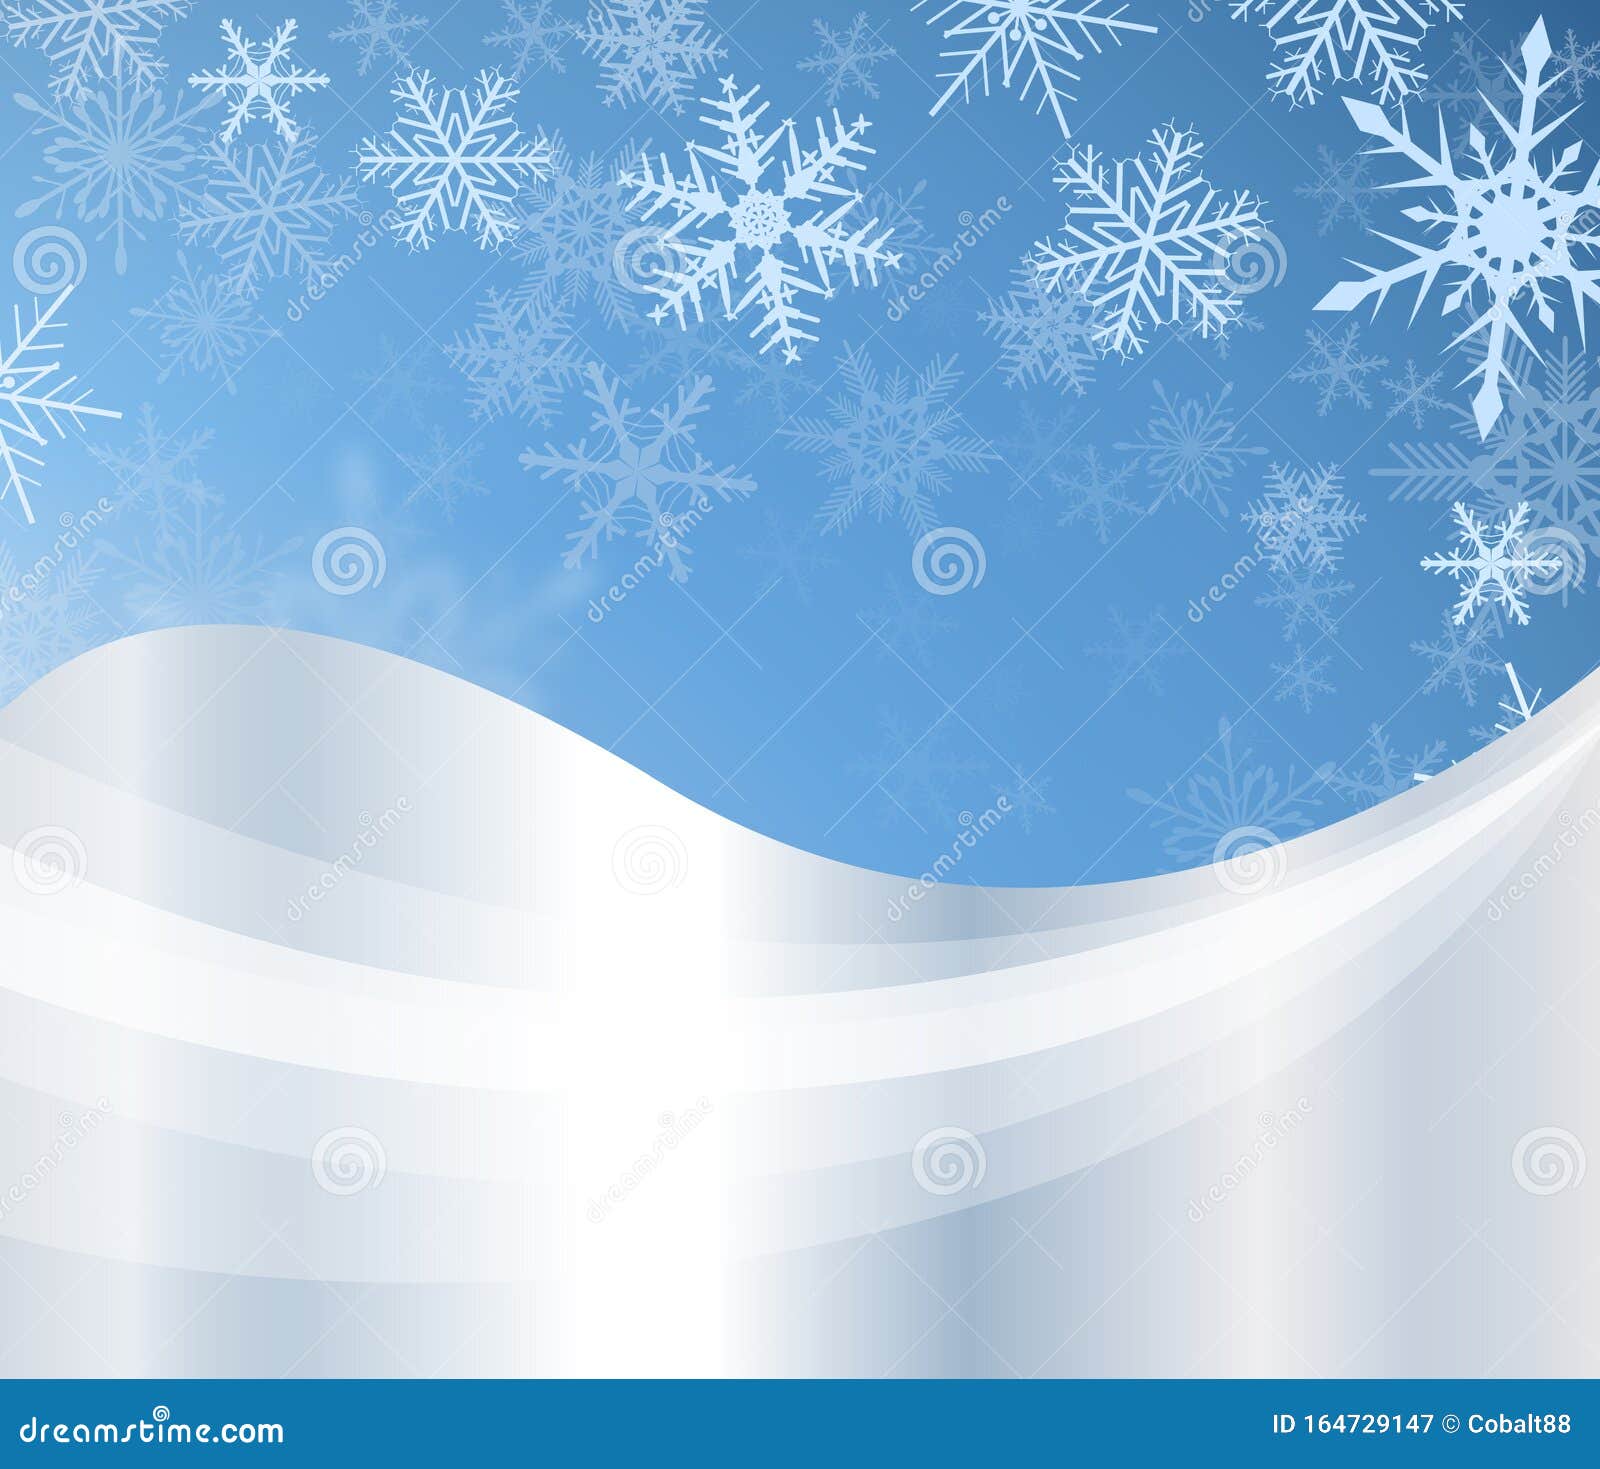 圣诞背景 冬雪向量例证 插画包括有向量 装饰品 下雪 冬天 雪花 例证 背包 降雪